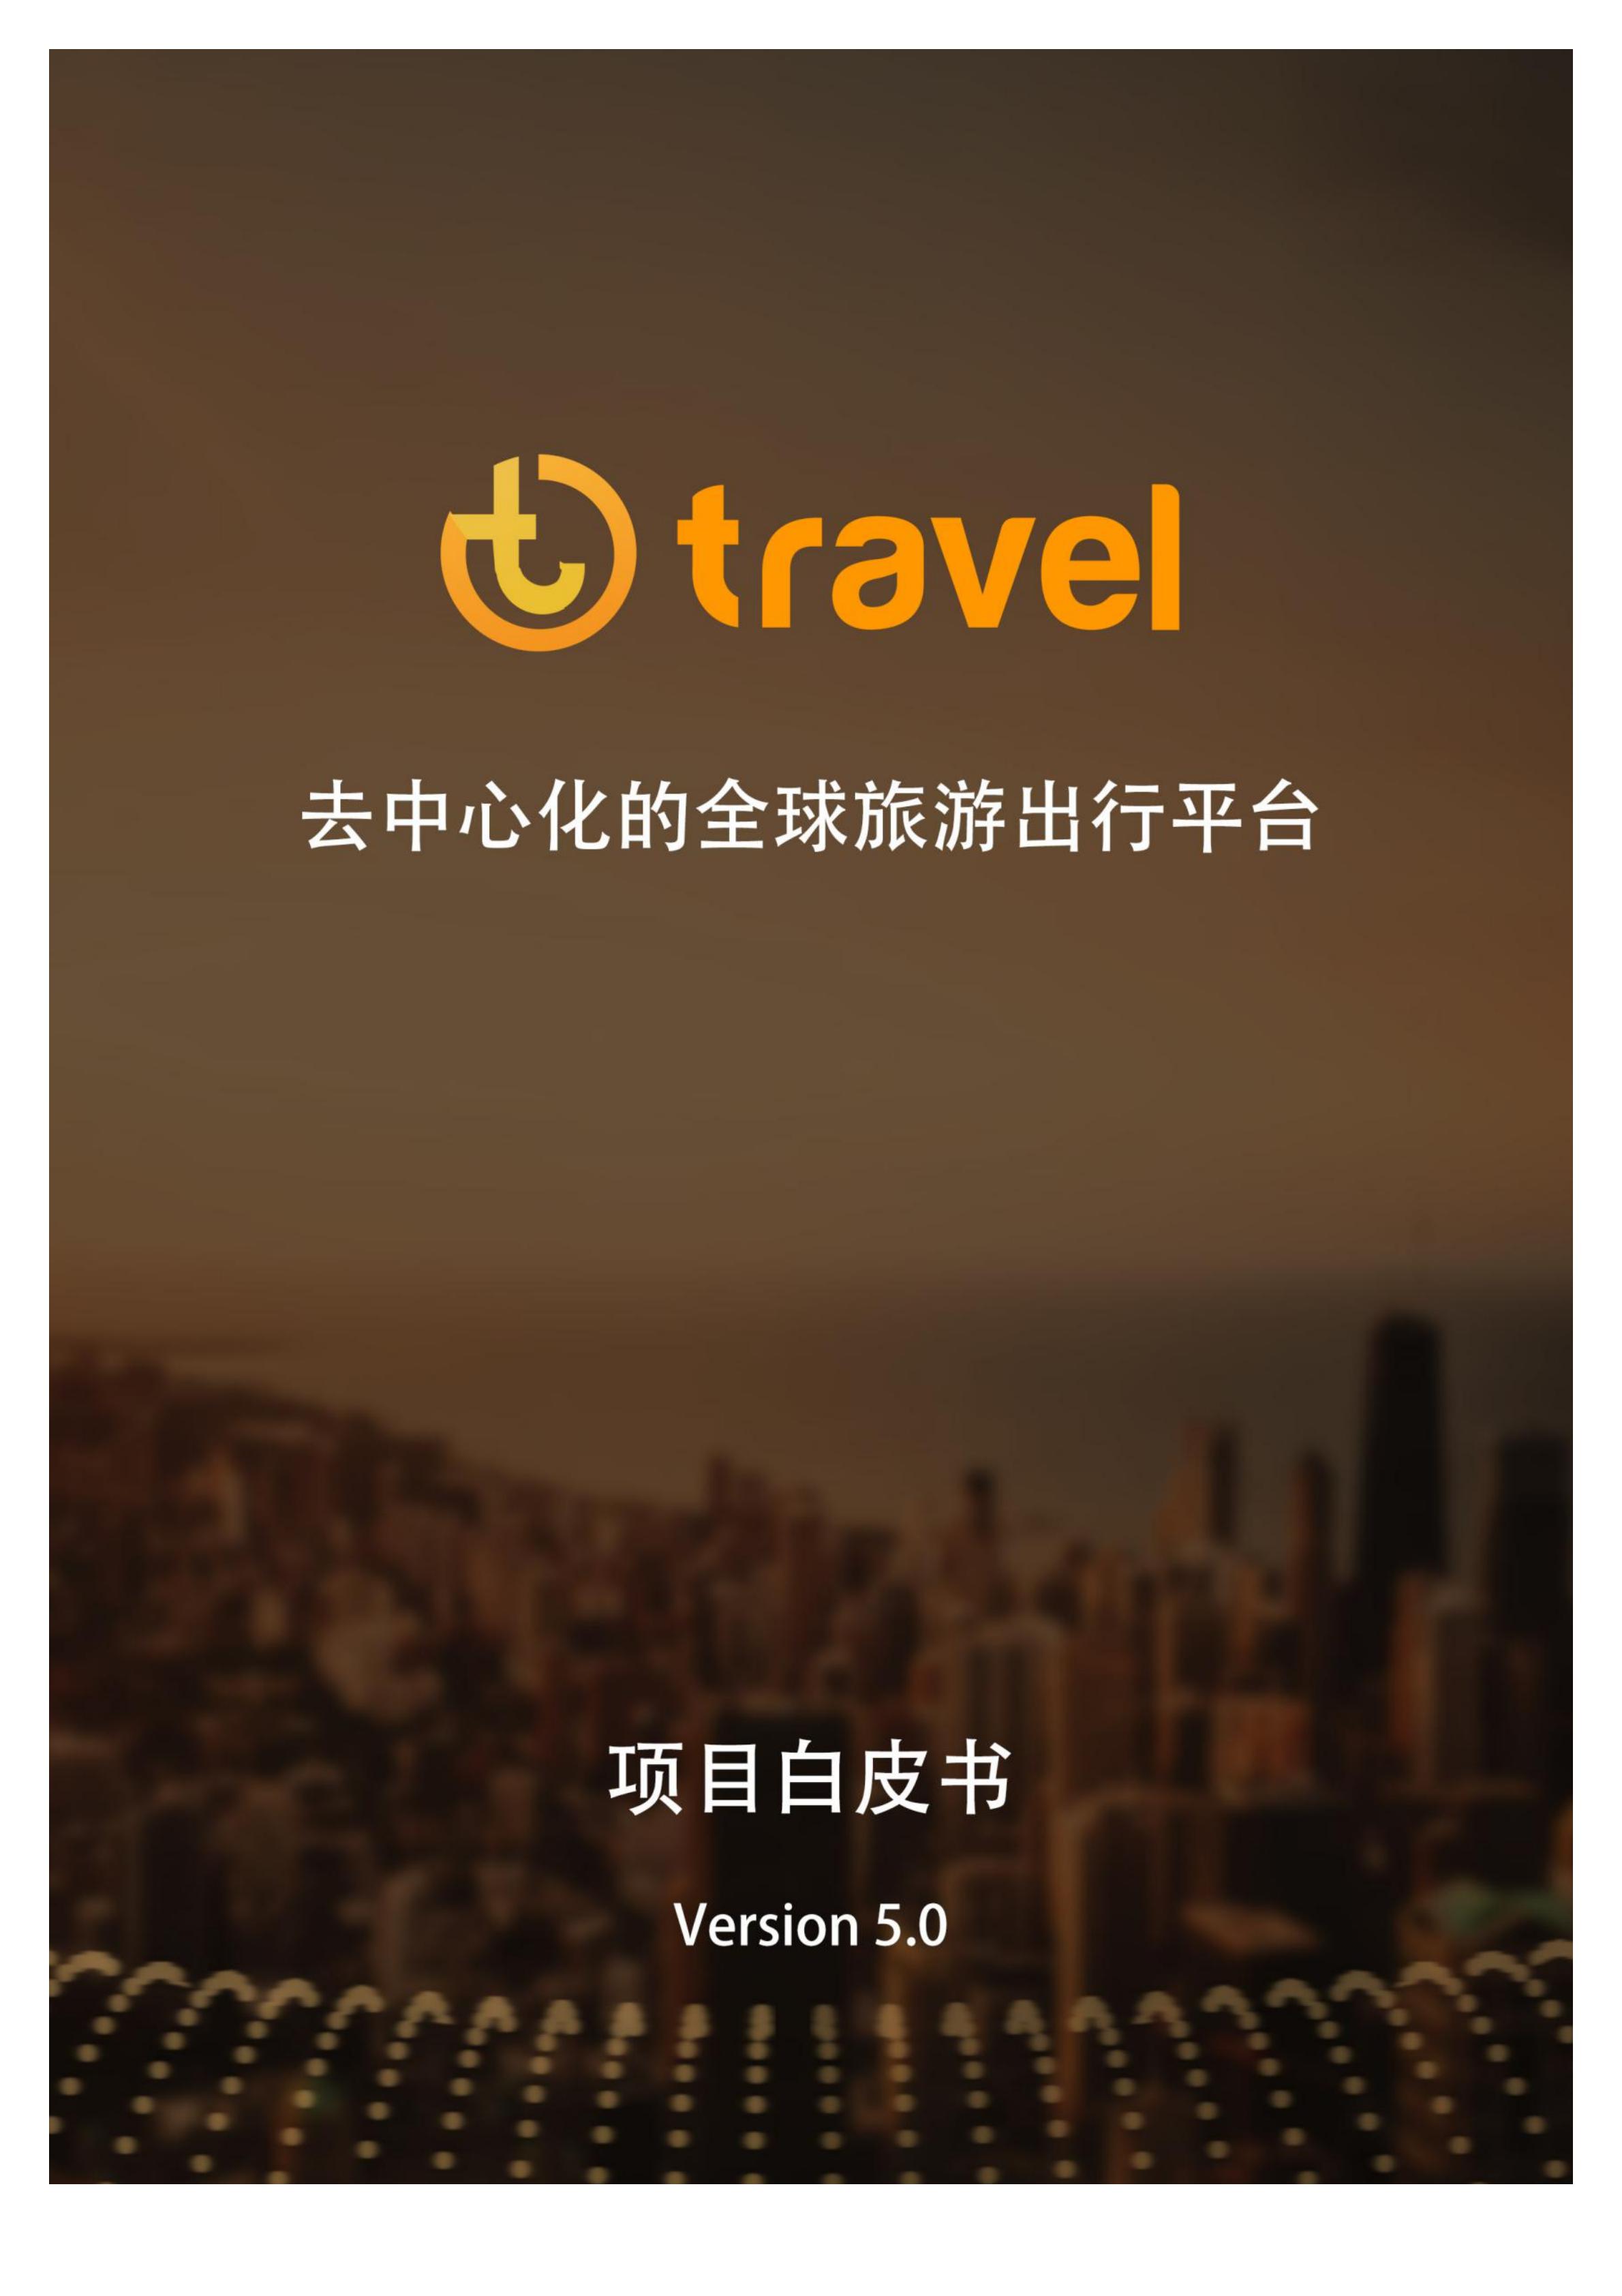 TRA_Travel_White Paper_cn_00.jpg